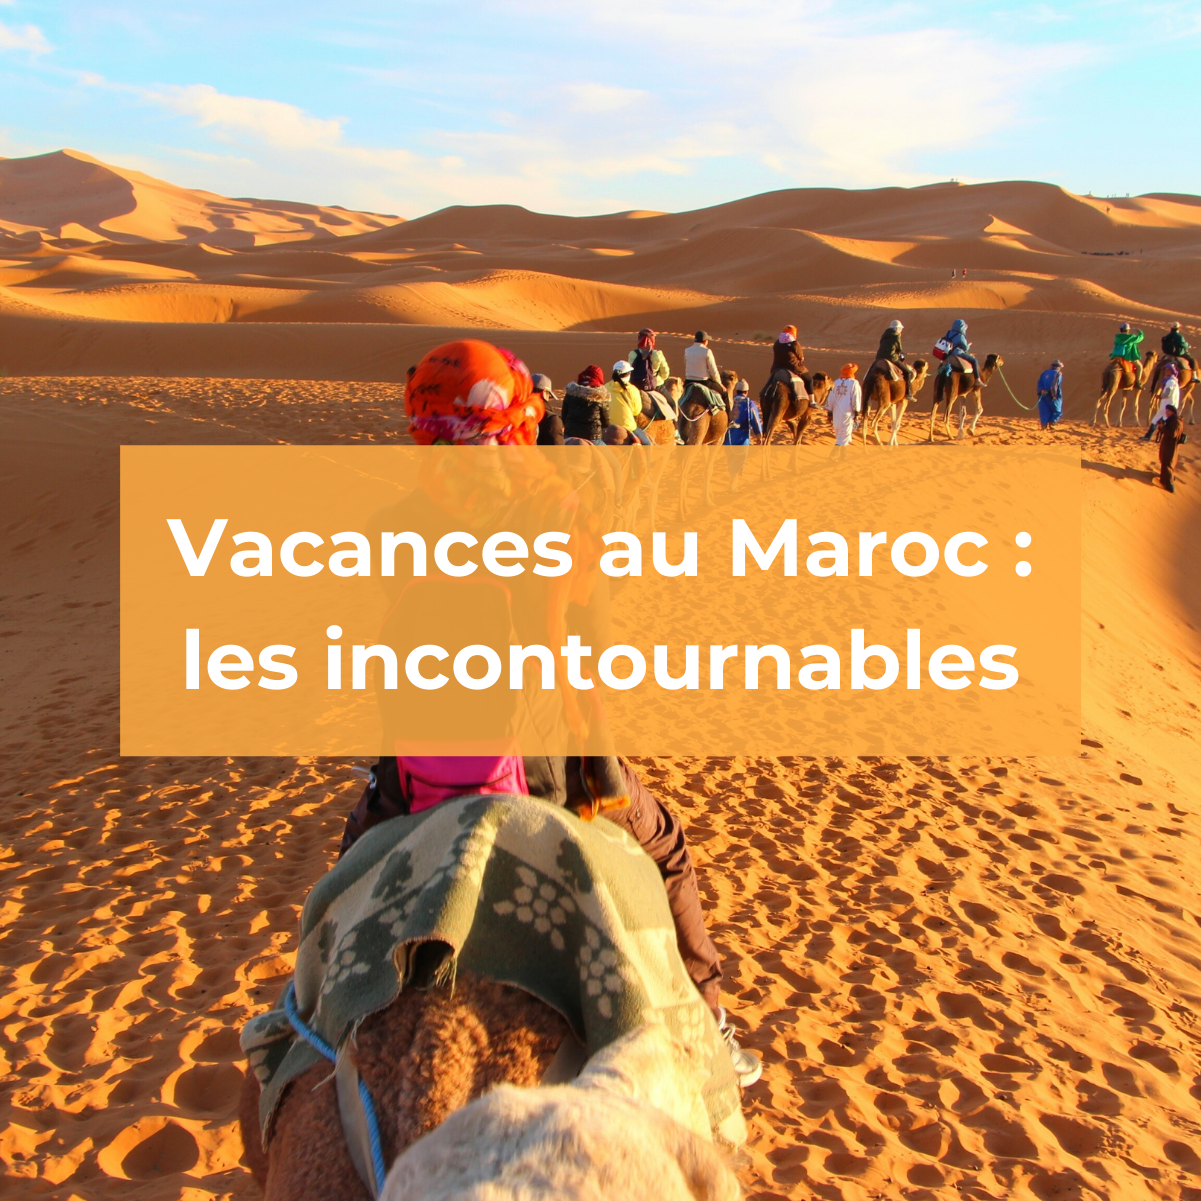 Vacances au Maroc : les incontournables